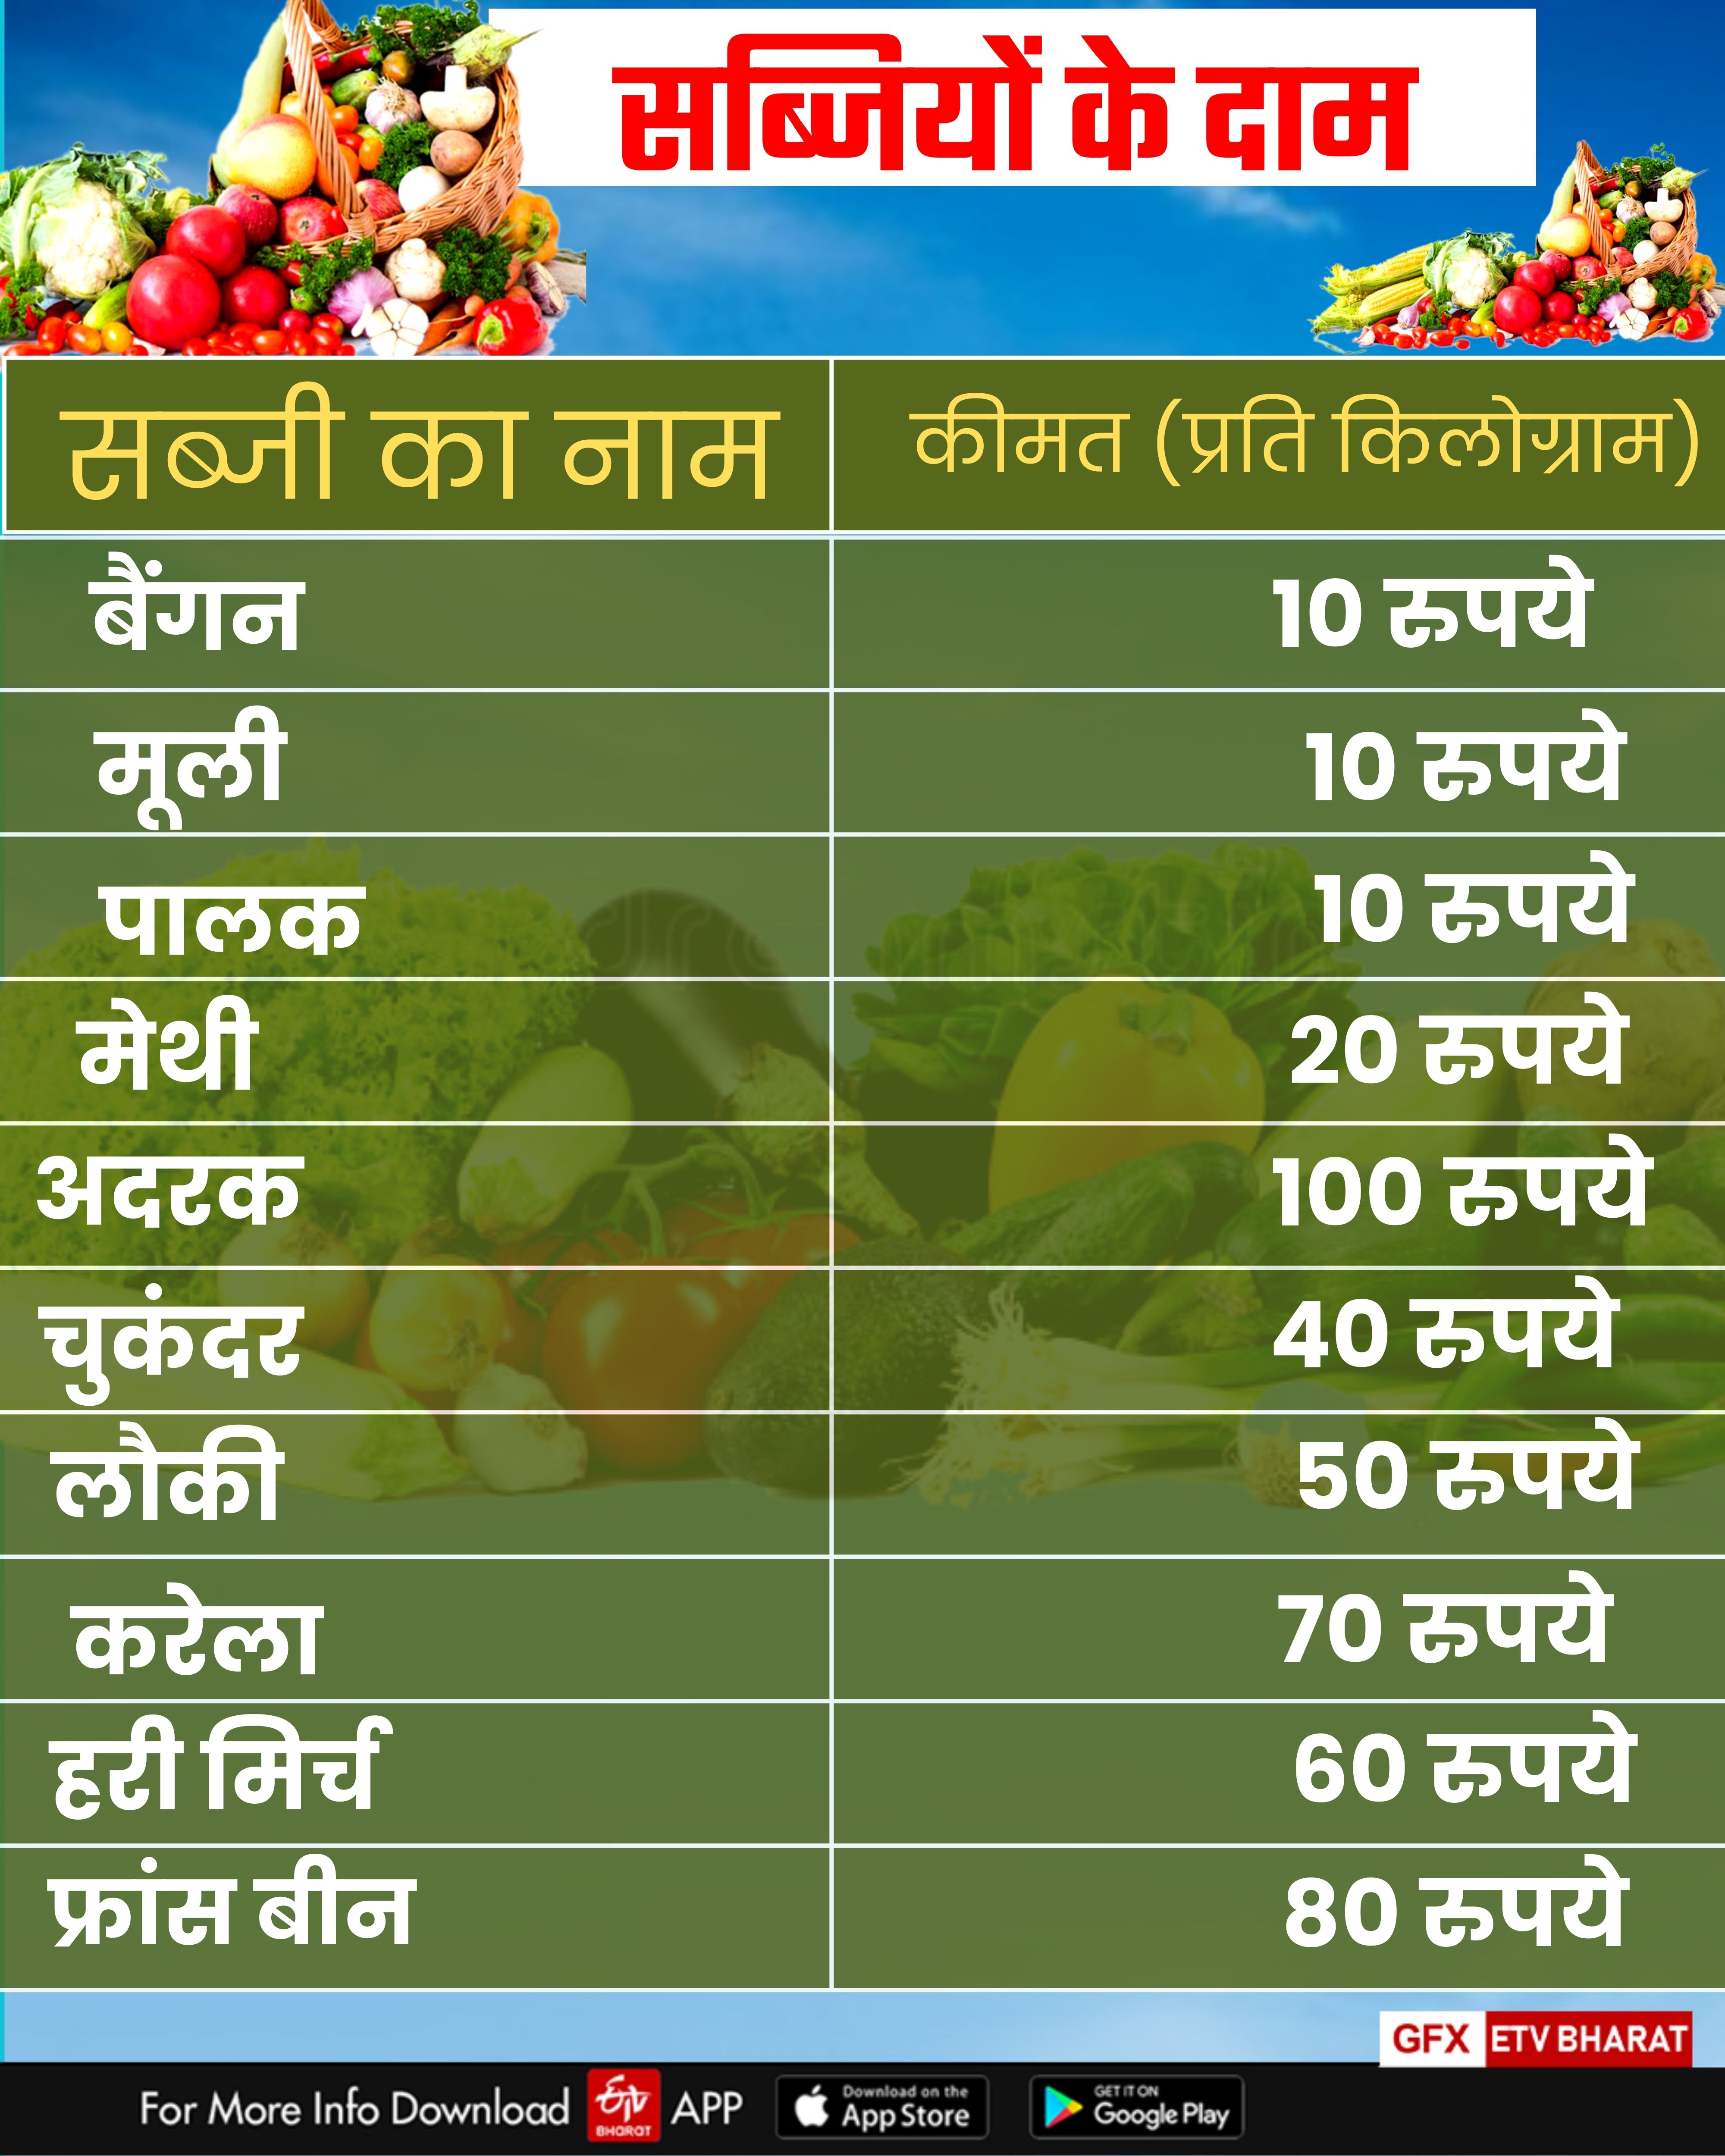 Vegetables Price in Haryana